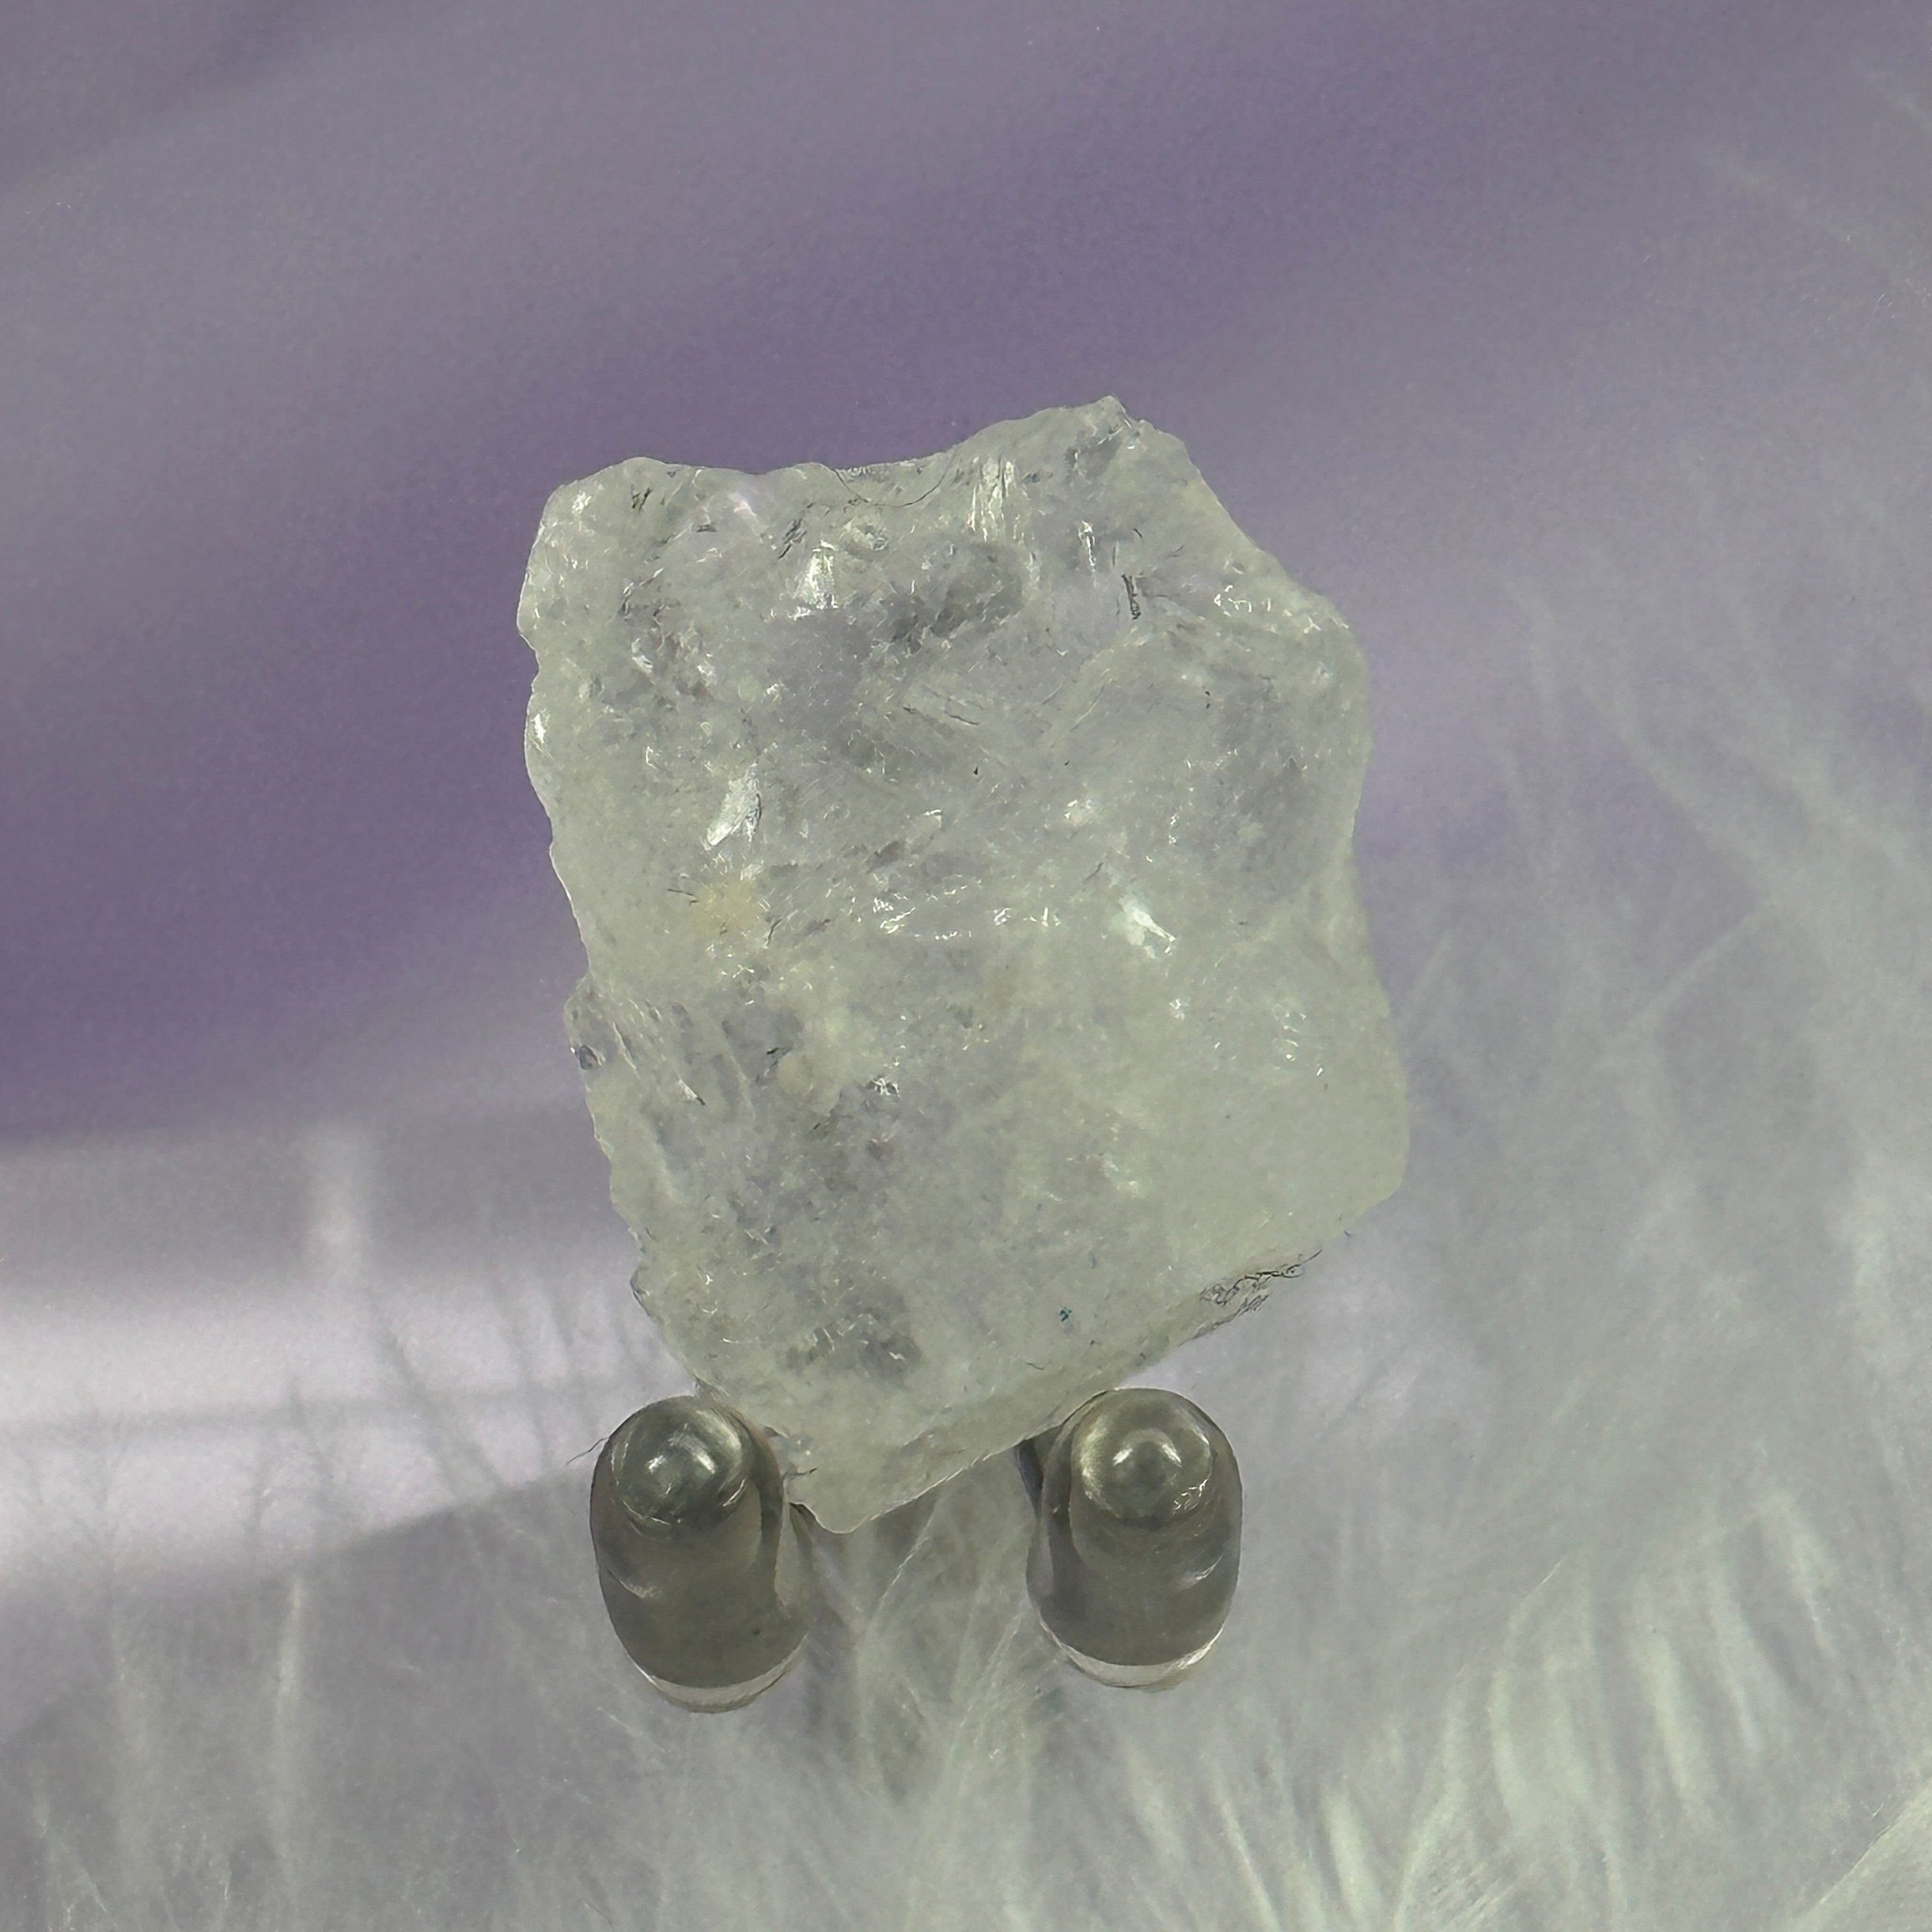 Rare small natural piece Petalite crystal from Minas Gerias 6.6g SN55233